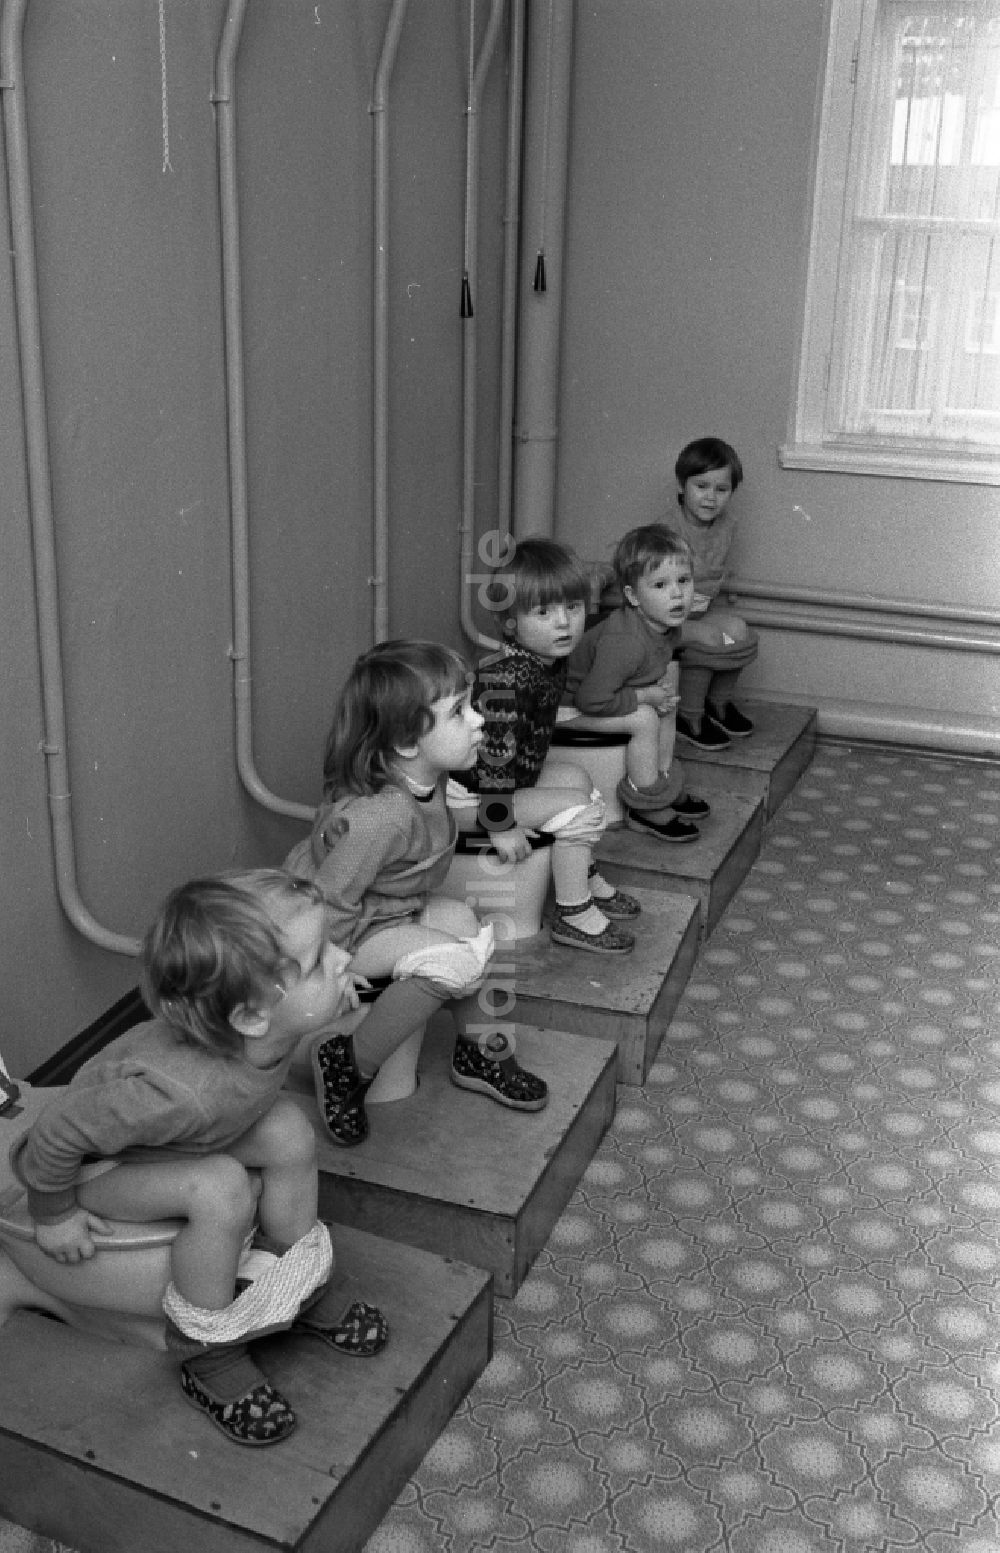 DDR-Bildarchiv: Berlin - Kindergartengruppe auf der Toilette in Berlin in der DDR